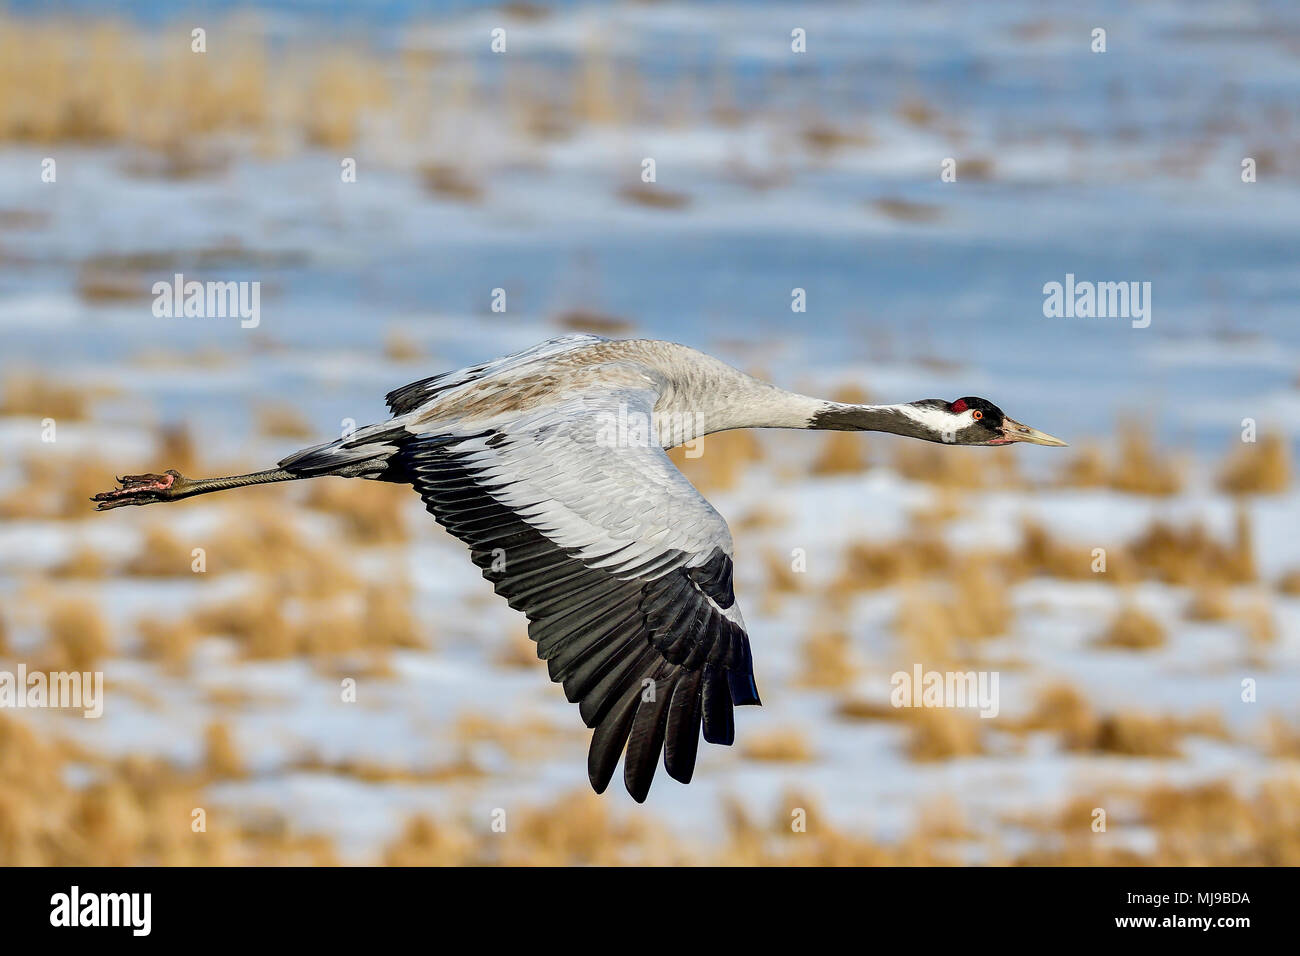 Eurasian crane in very close proximity. Stock Photo